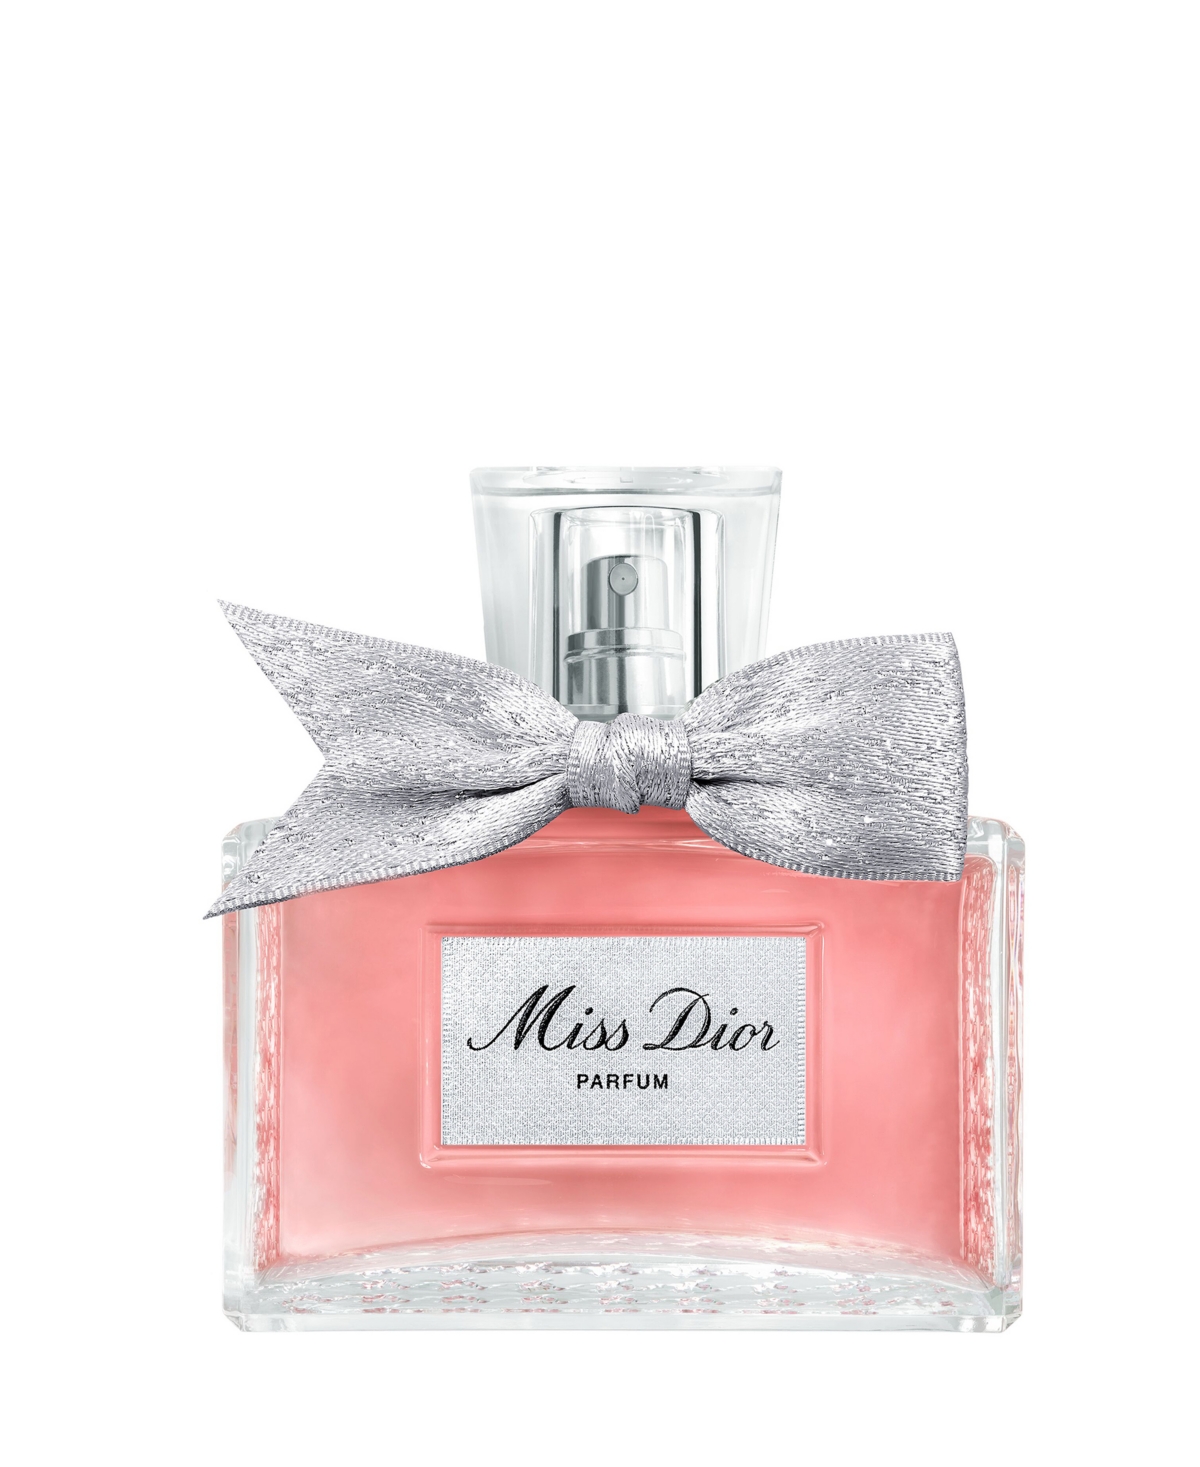 Miss Dior Parfum, 2.7 oz.